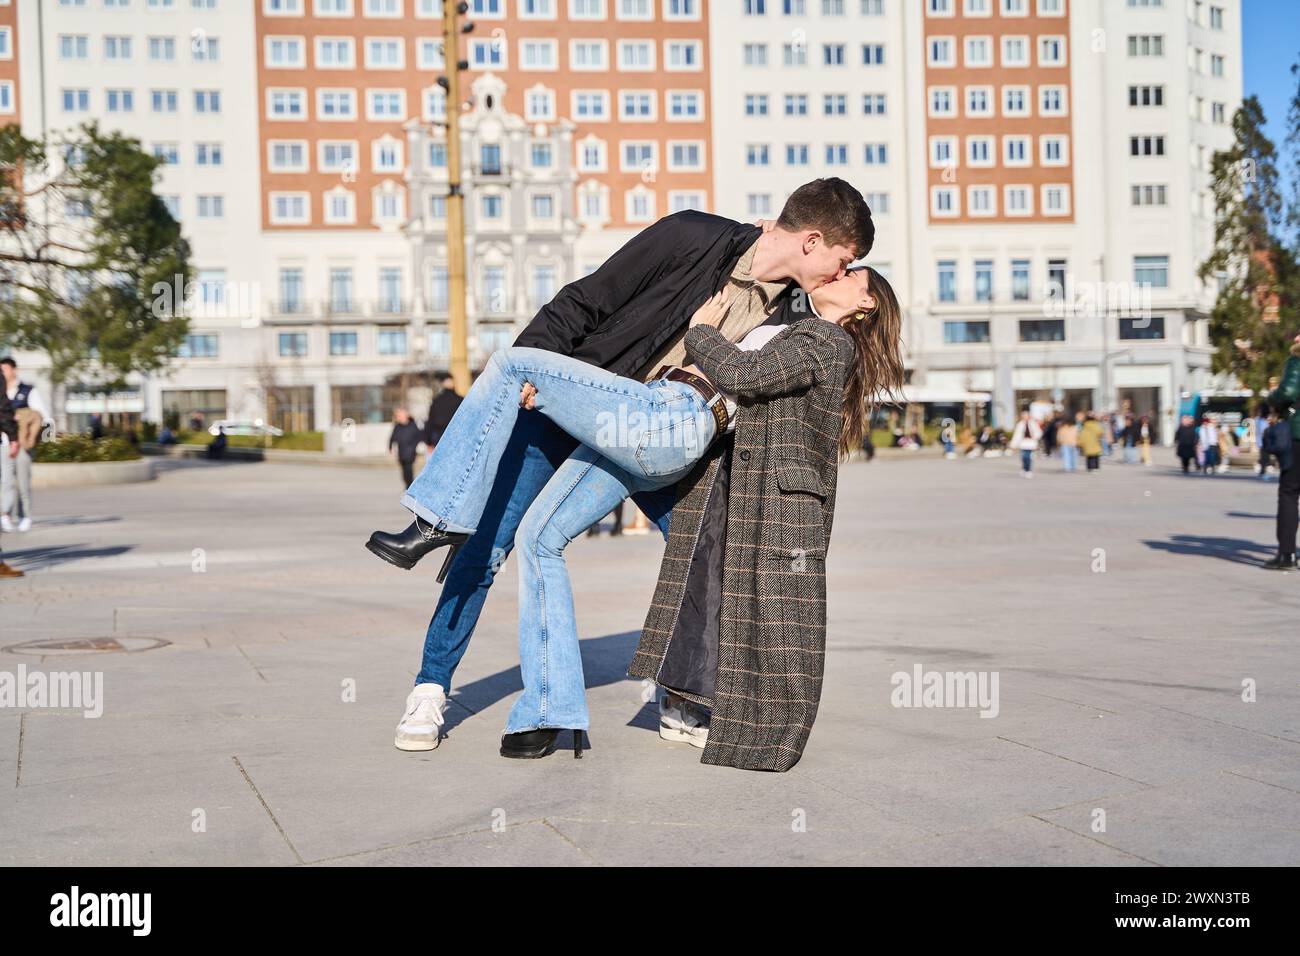 Das junge Paar tauchte in einen leidenschaftlichen Kuss ein, der Intensität und Romantik in der pulsierenden Stadt überträgt Stockfoto